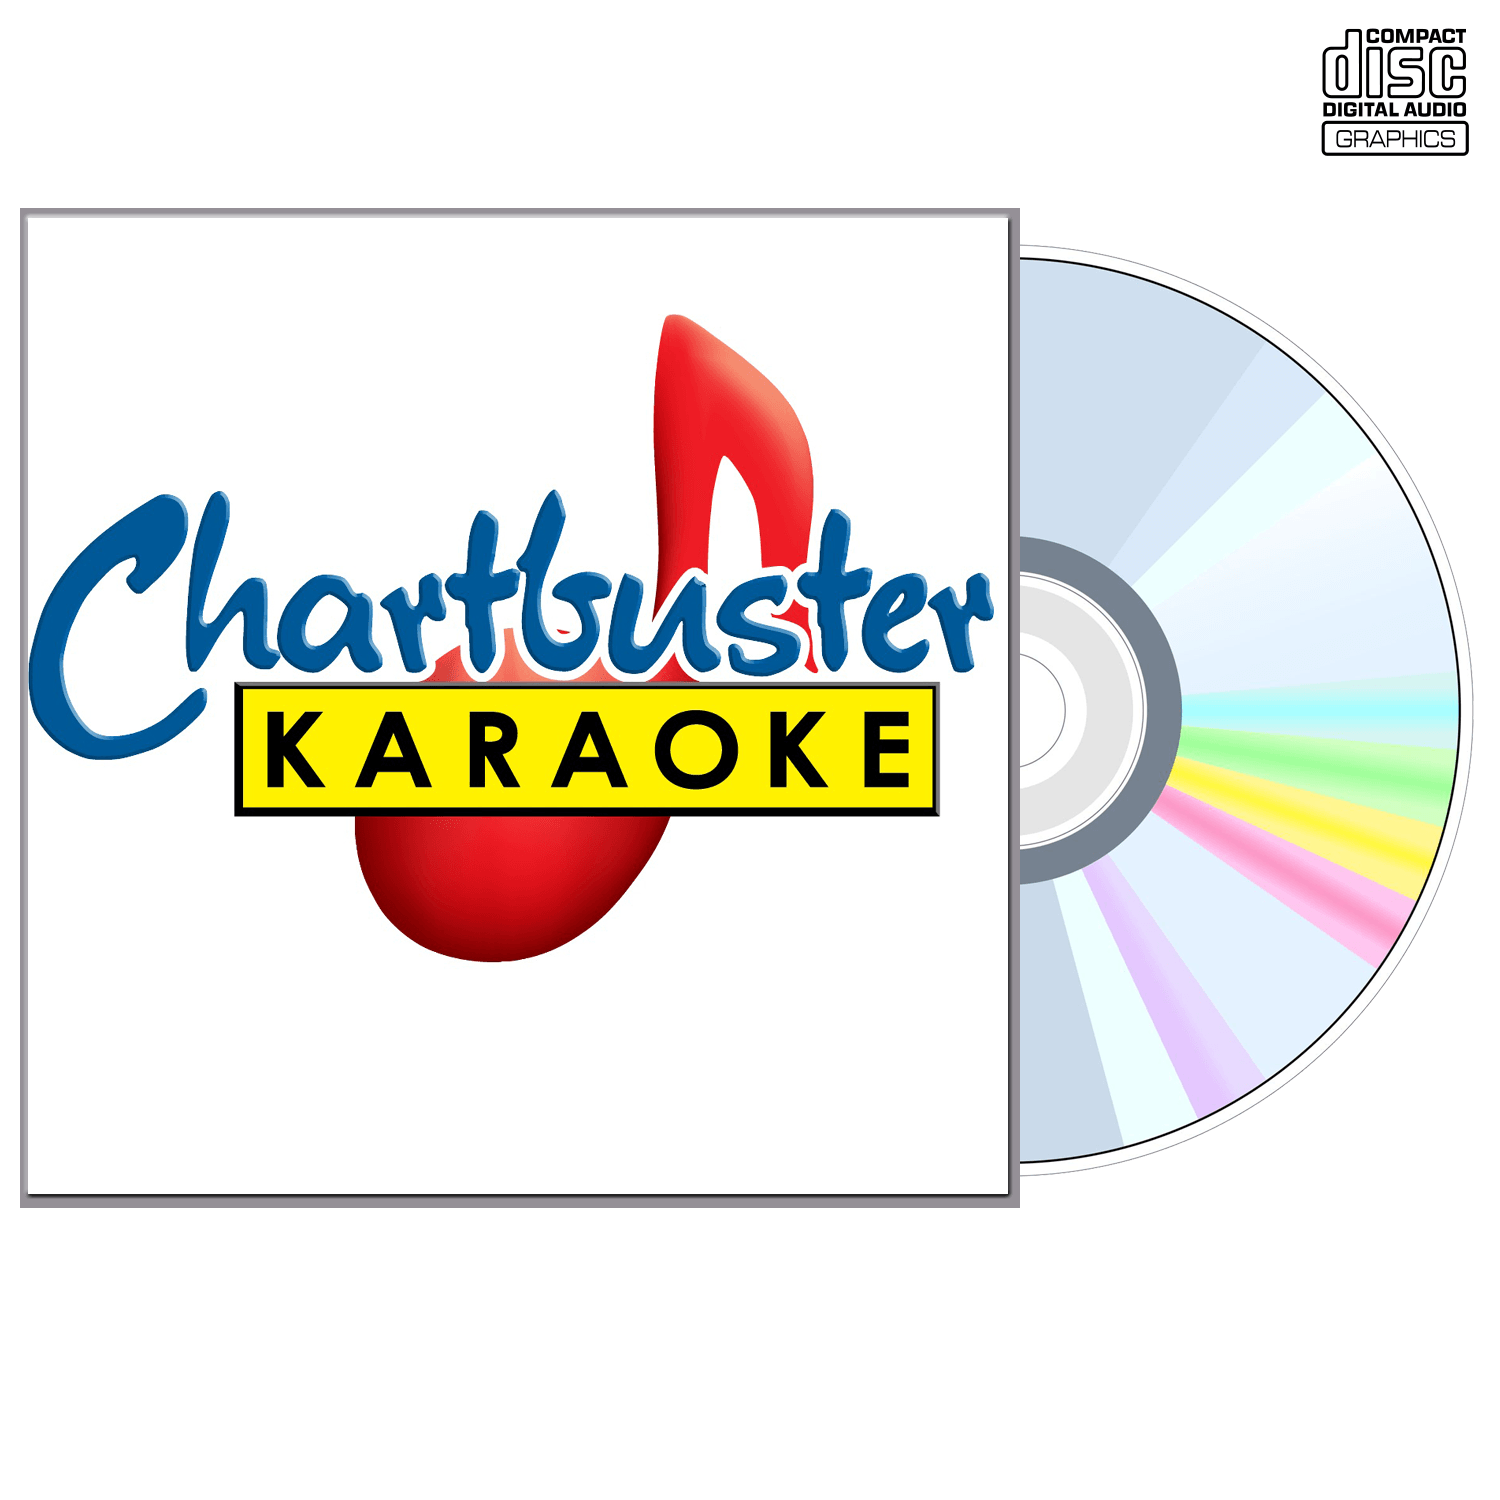 Kenny Loggins - CD+G - Chartbuster Karaoke - Karaoke Home Entertainment